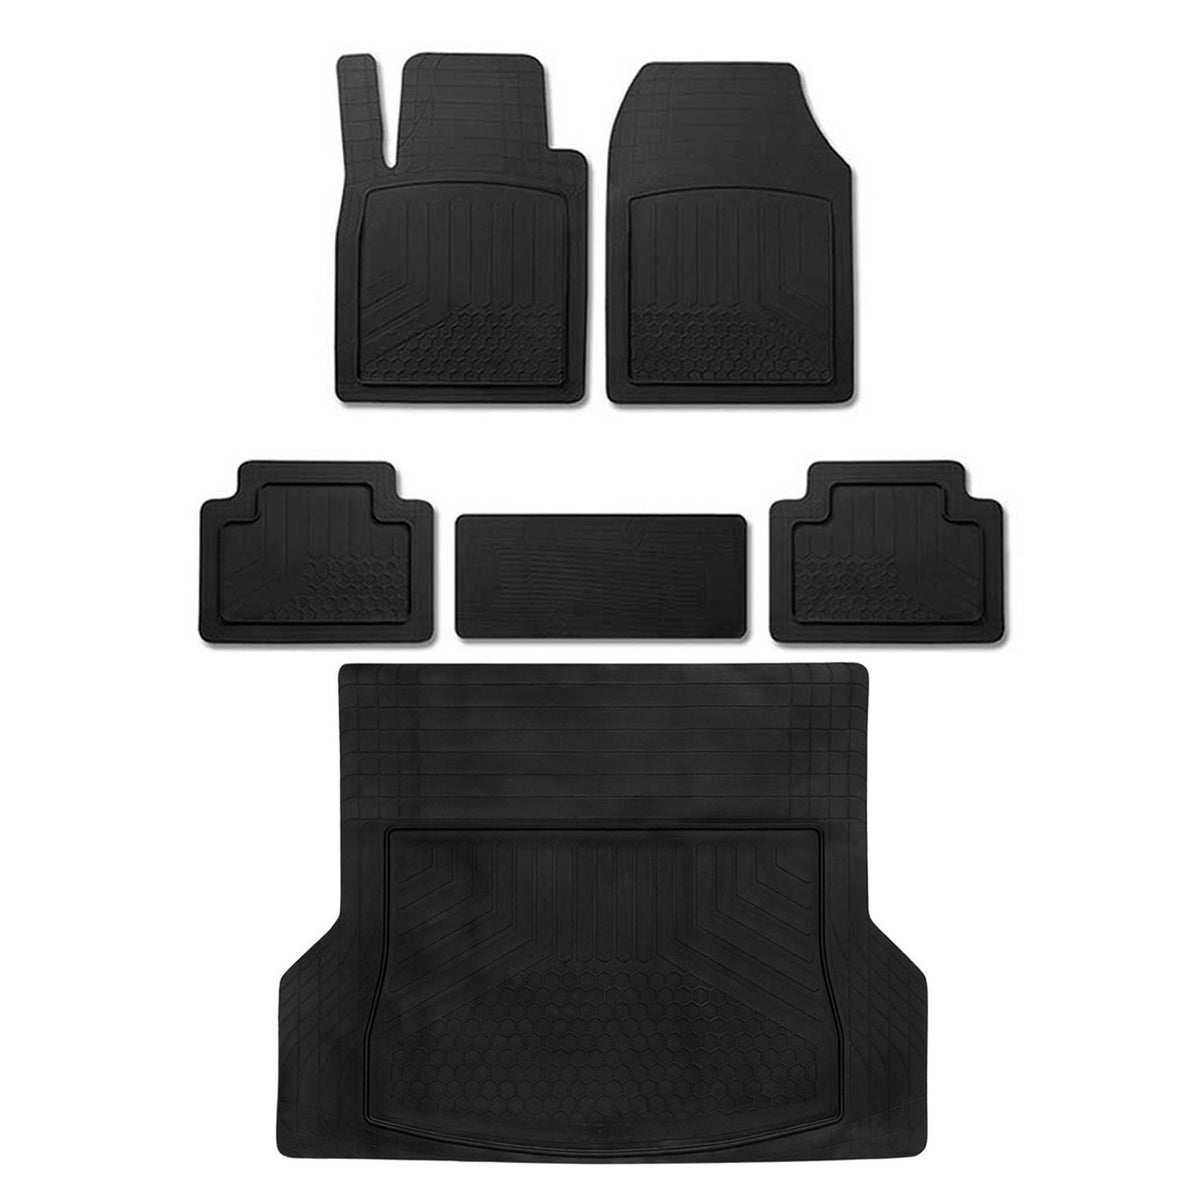 Fußmatten & Kofferraumwanne Set für Volvo XC60 Antirutsch Gummi Schwarz